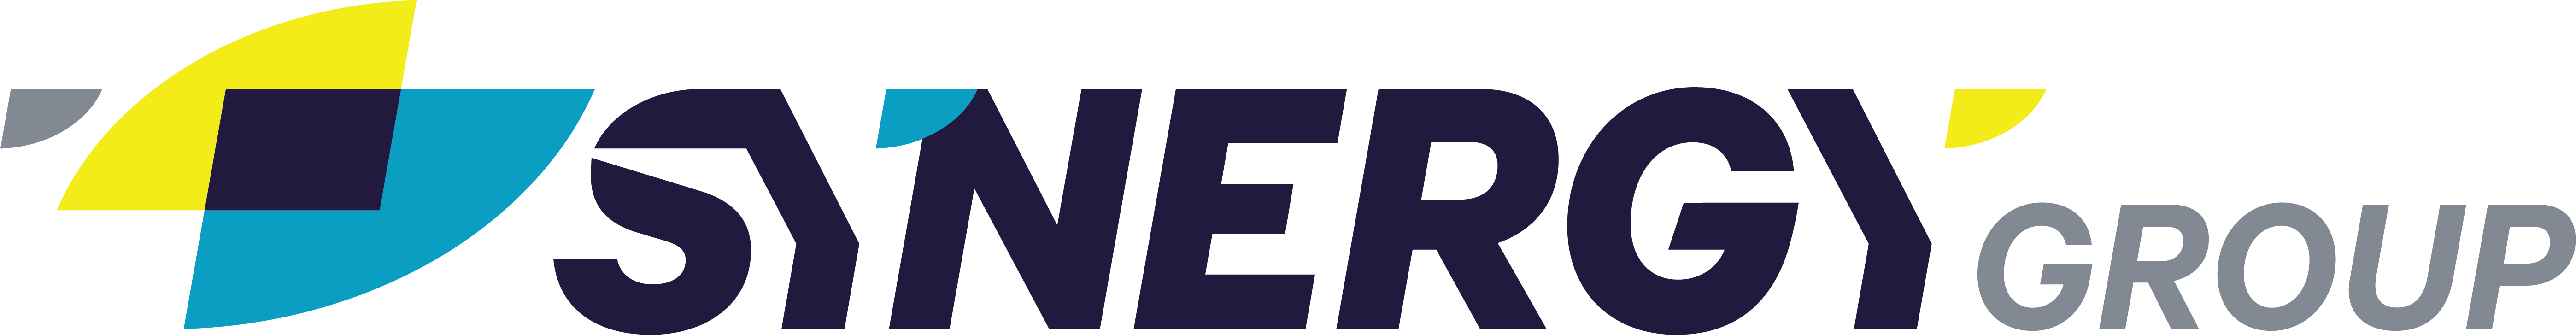 Synergy Group Logo 